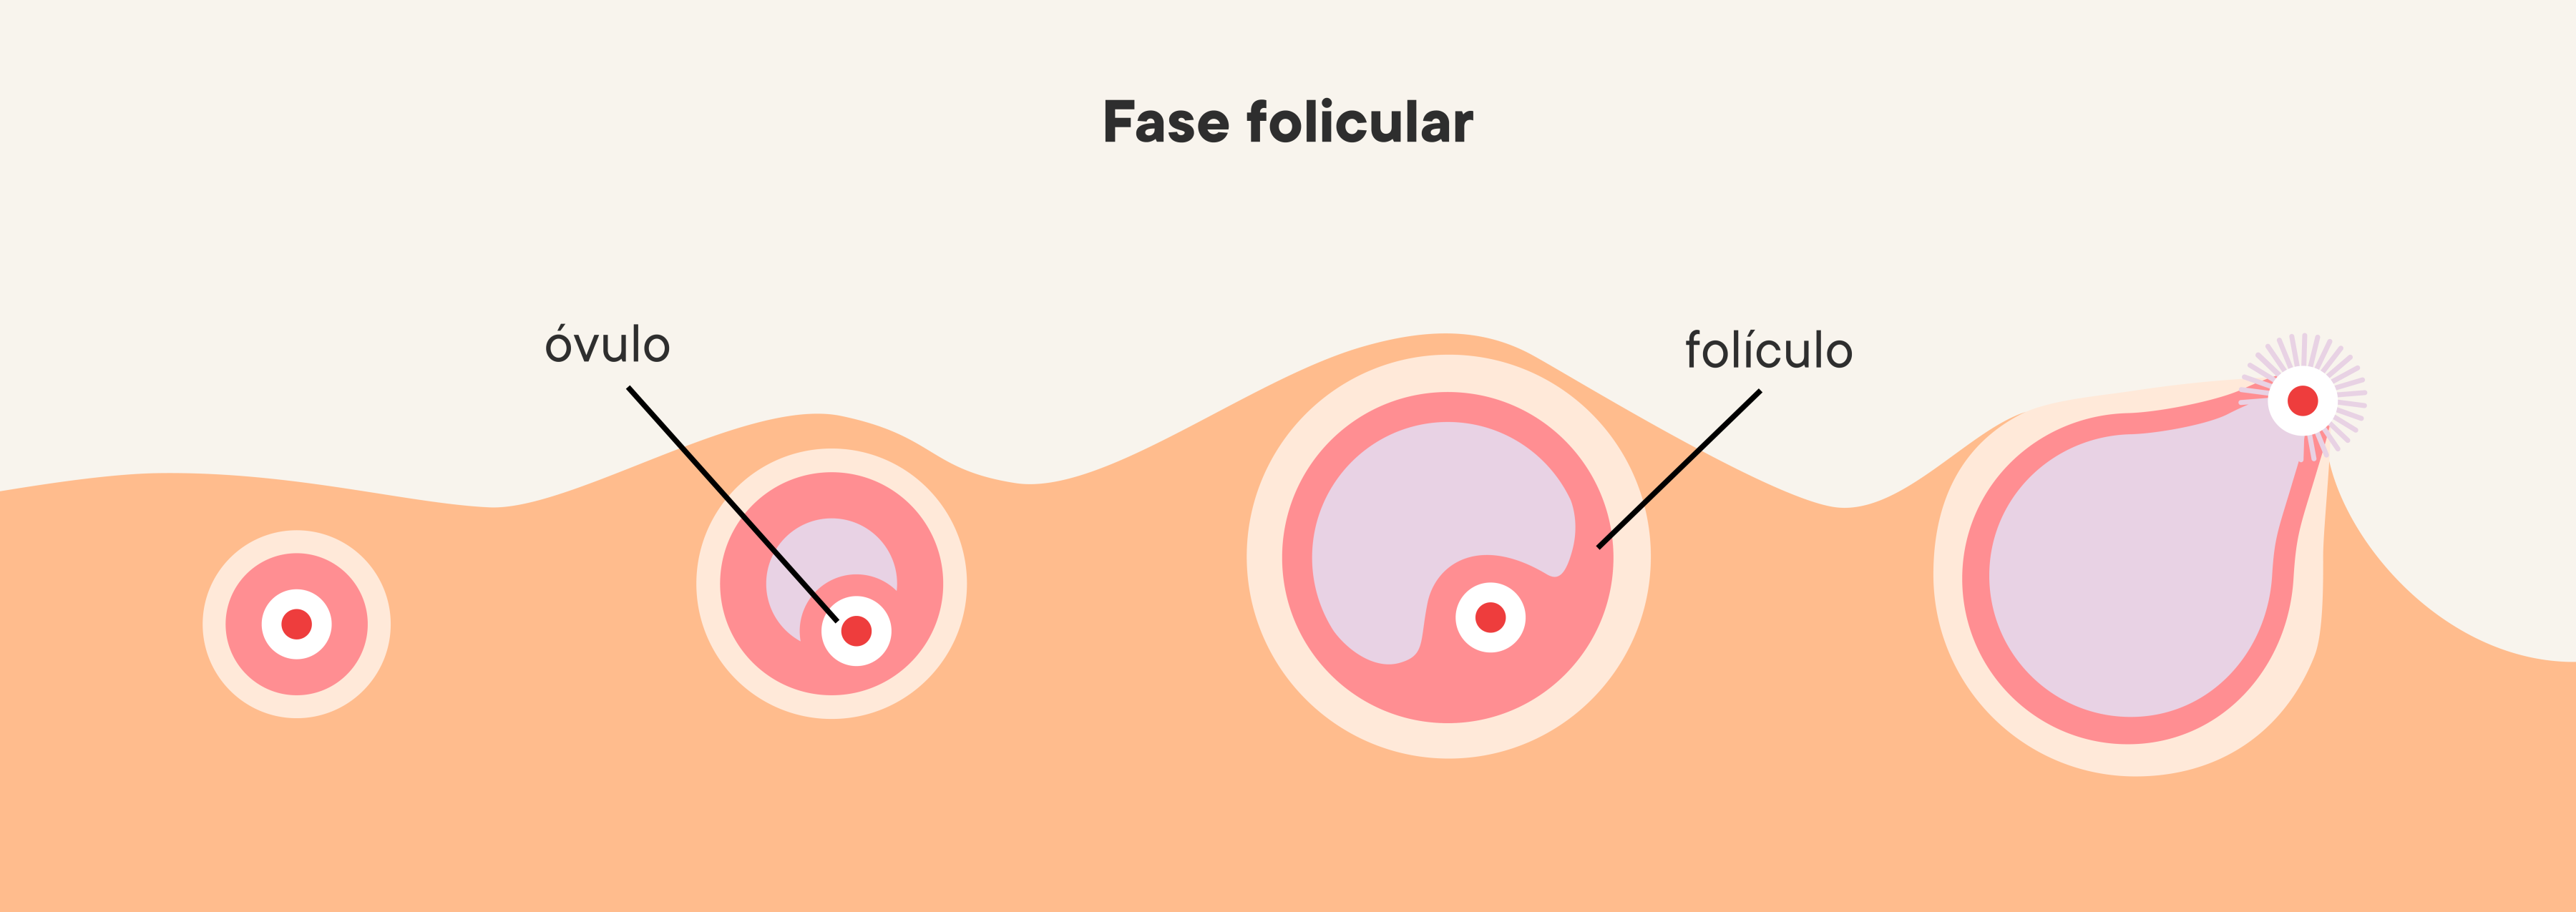 Ilustração da progressão da fase folicular nos ovários